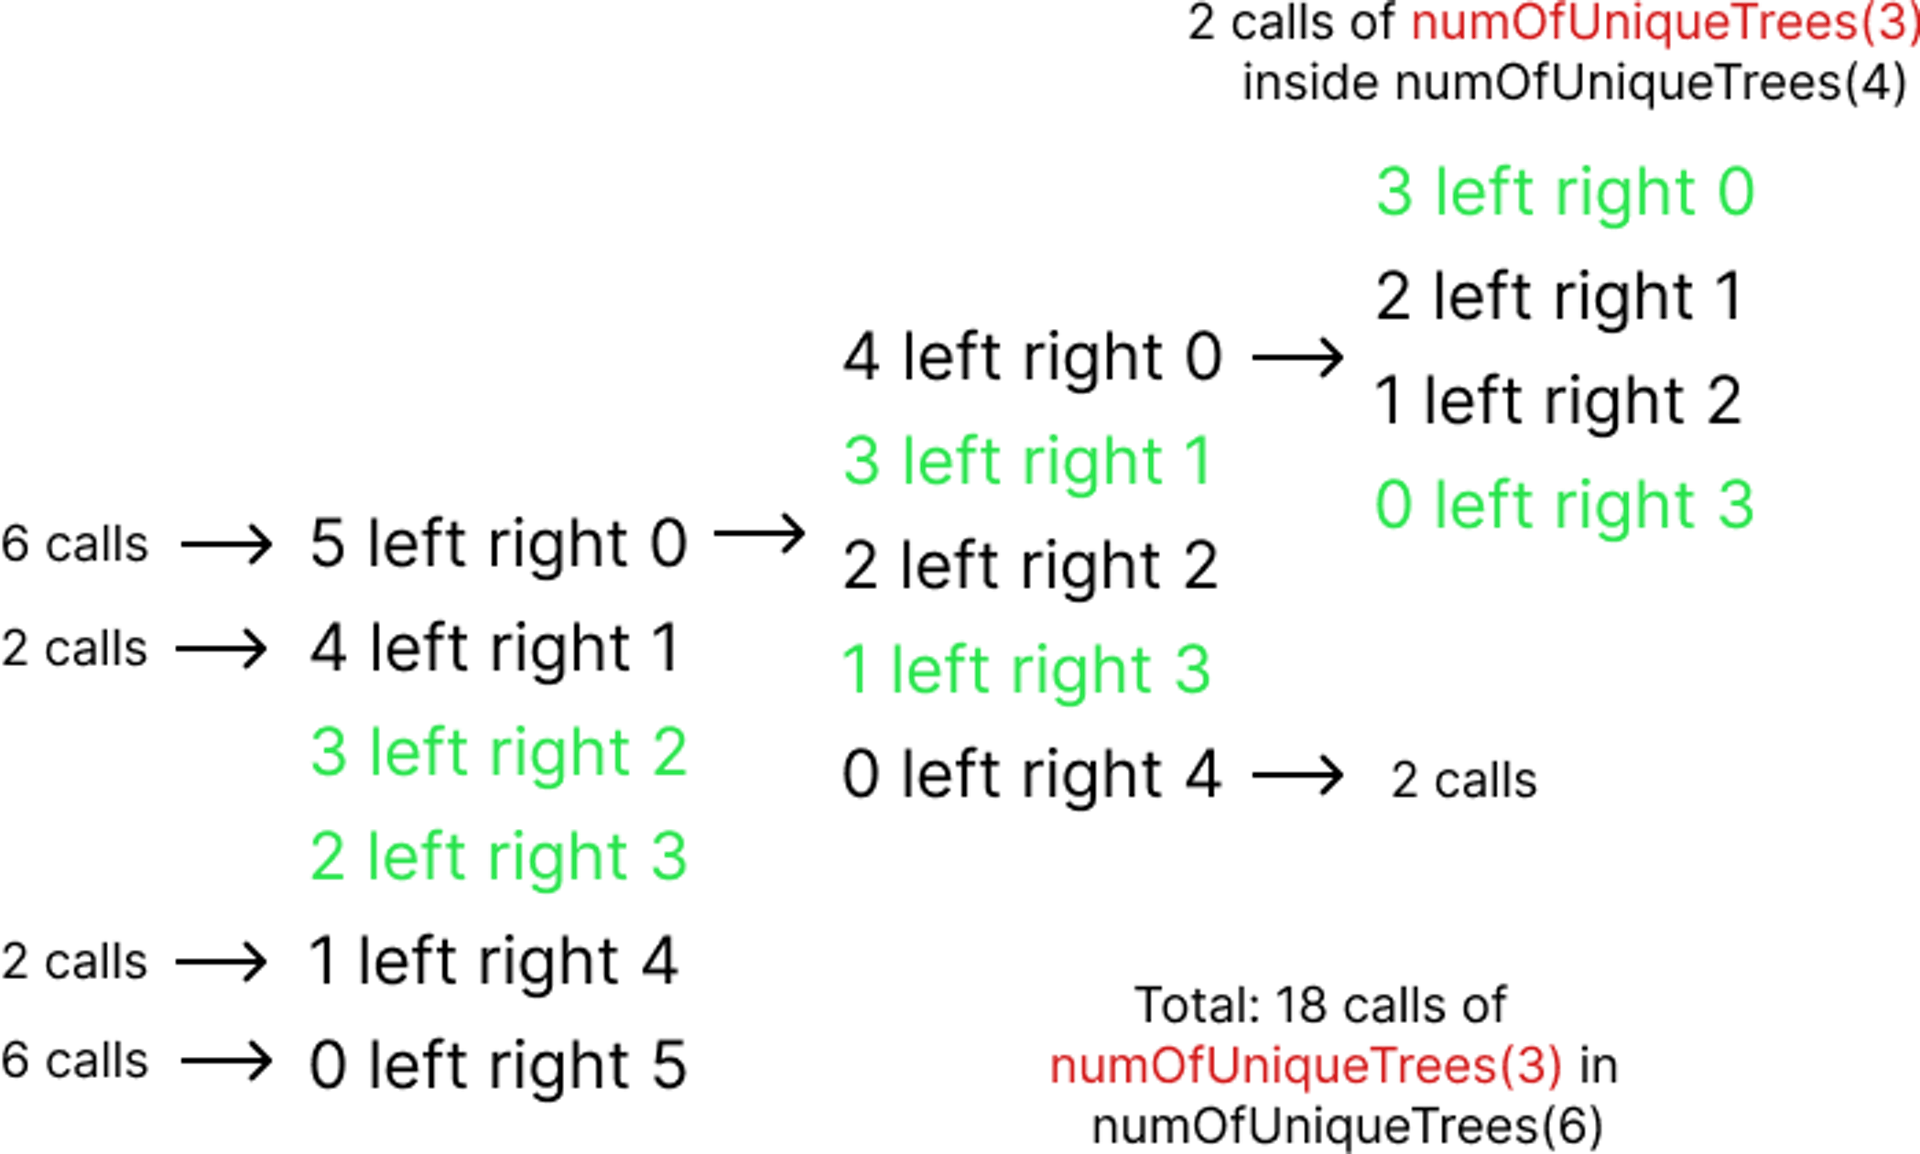 Llamadas de numOfUniqueTrees(3) en todas las distribuciones donde N = 6